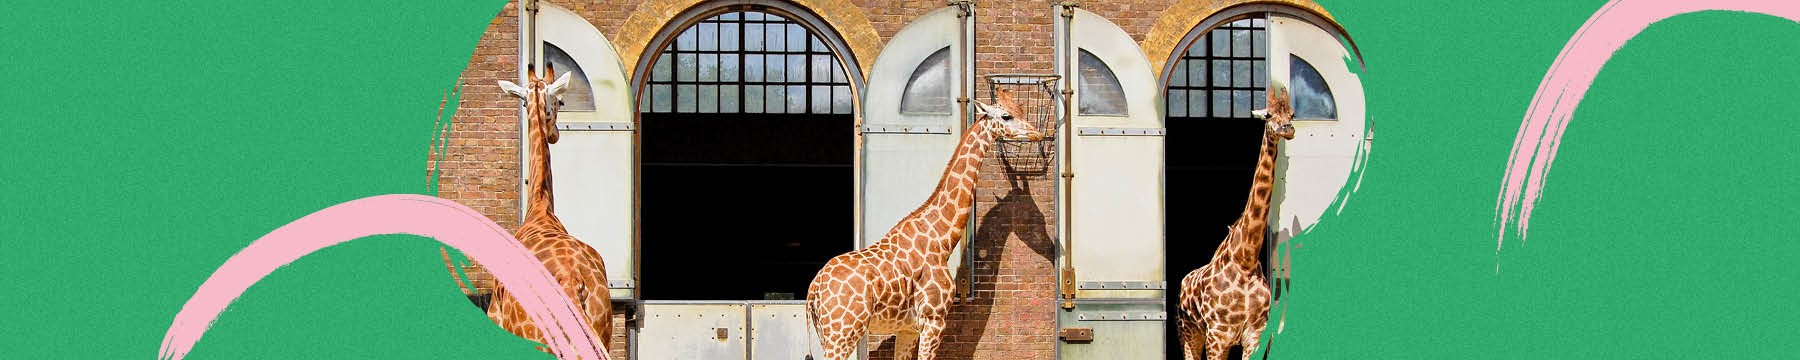 Giraffes in their enclosure 